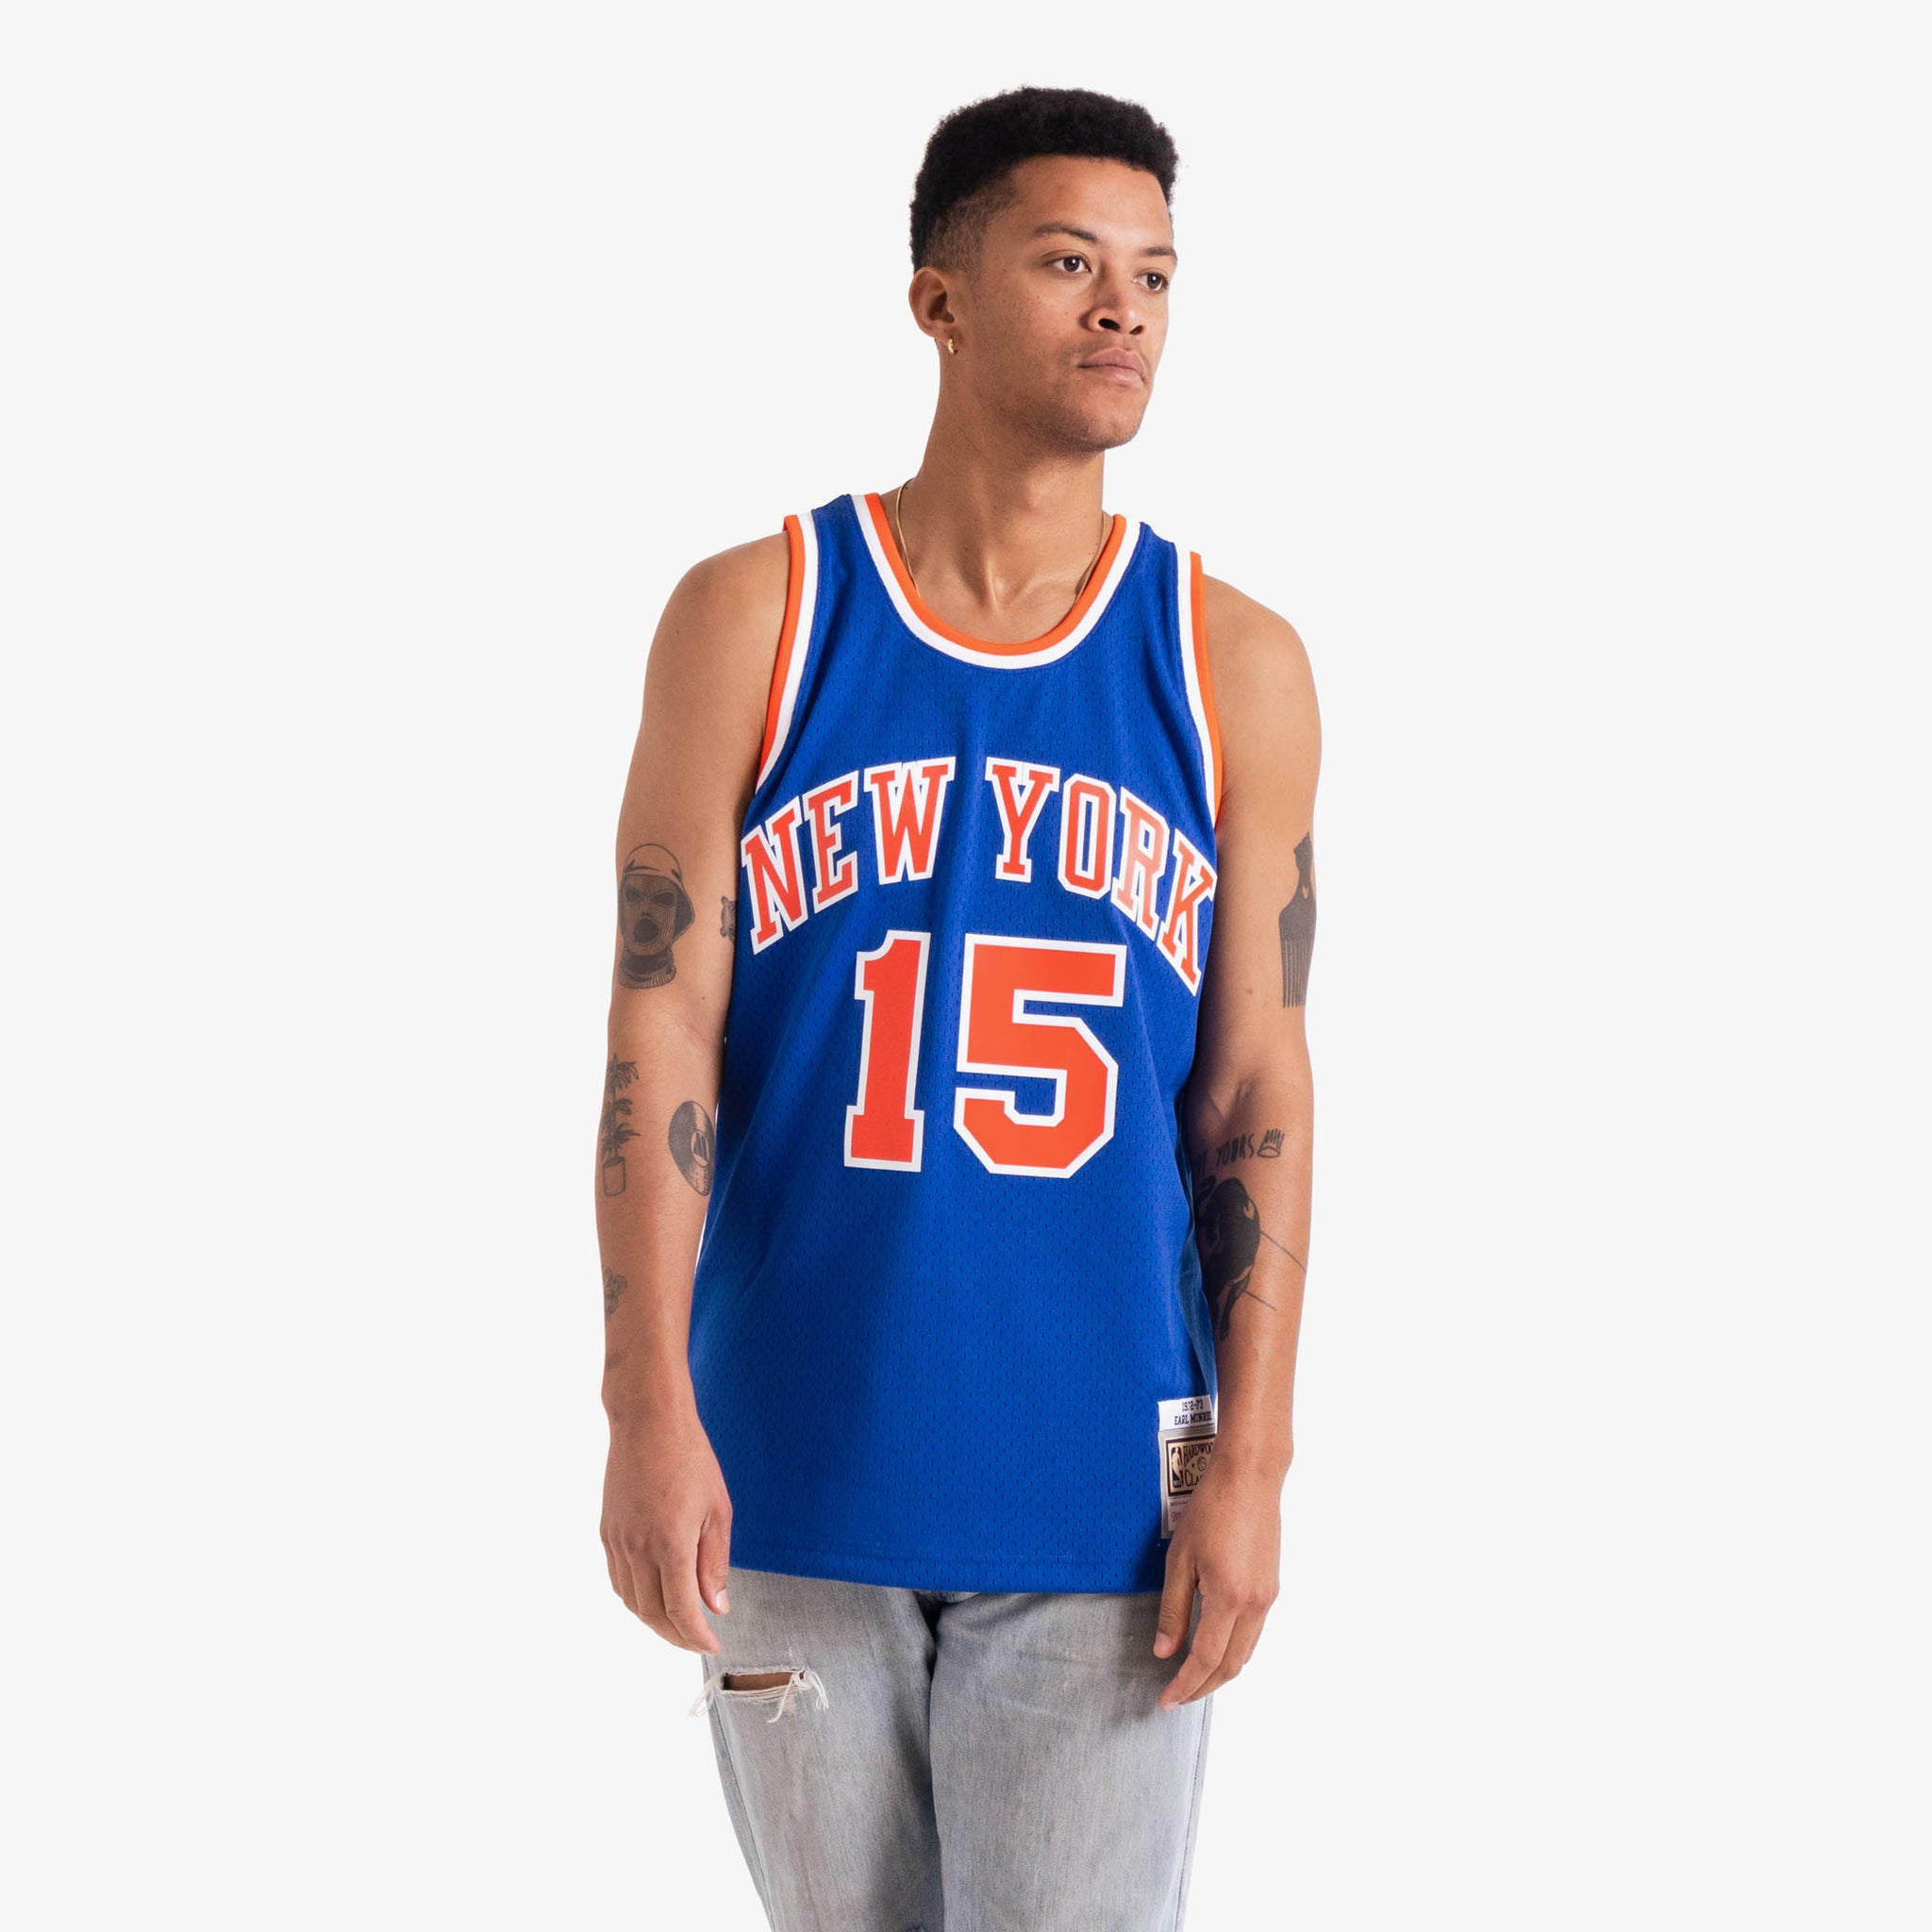 Walt Frazier New York Knicks Throwback Basketball Jersey.